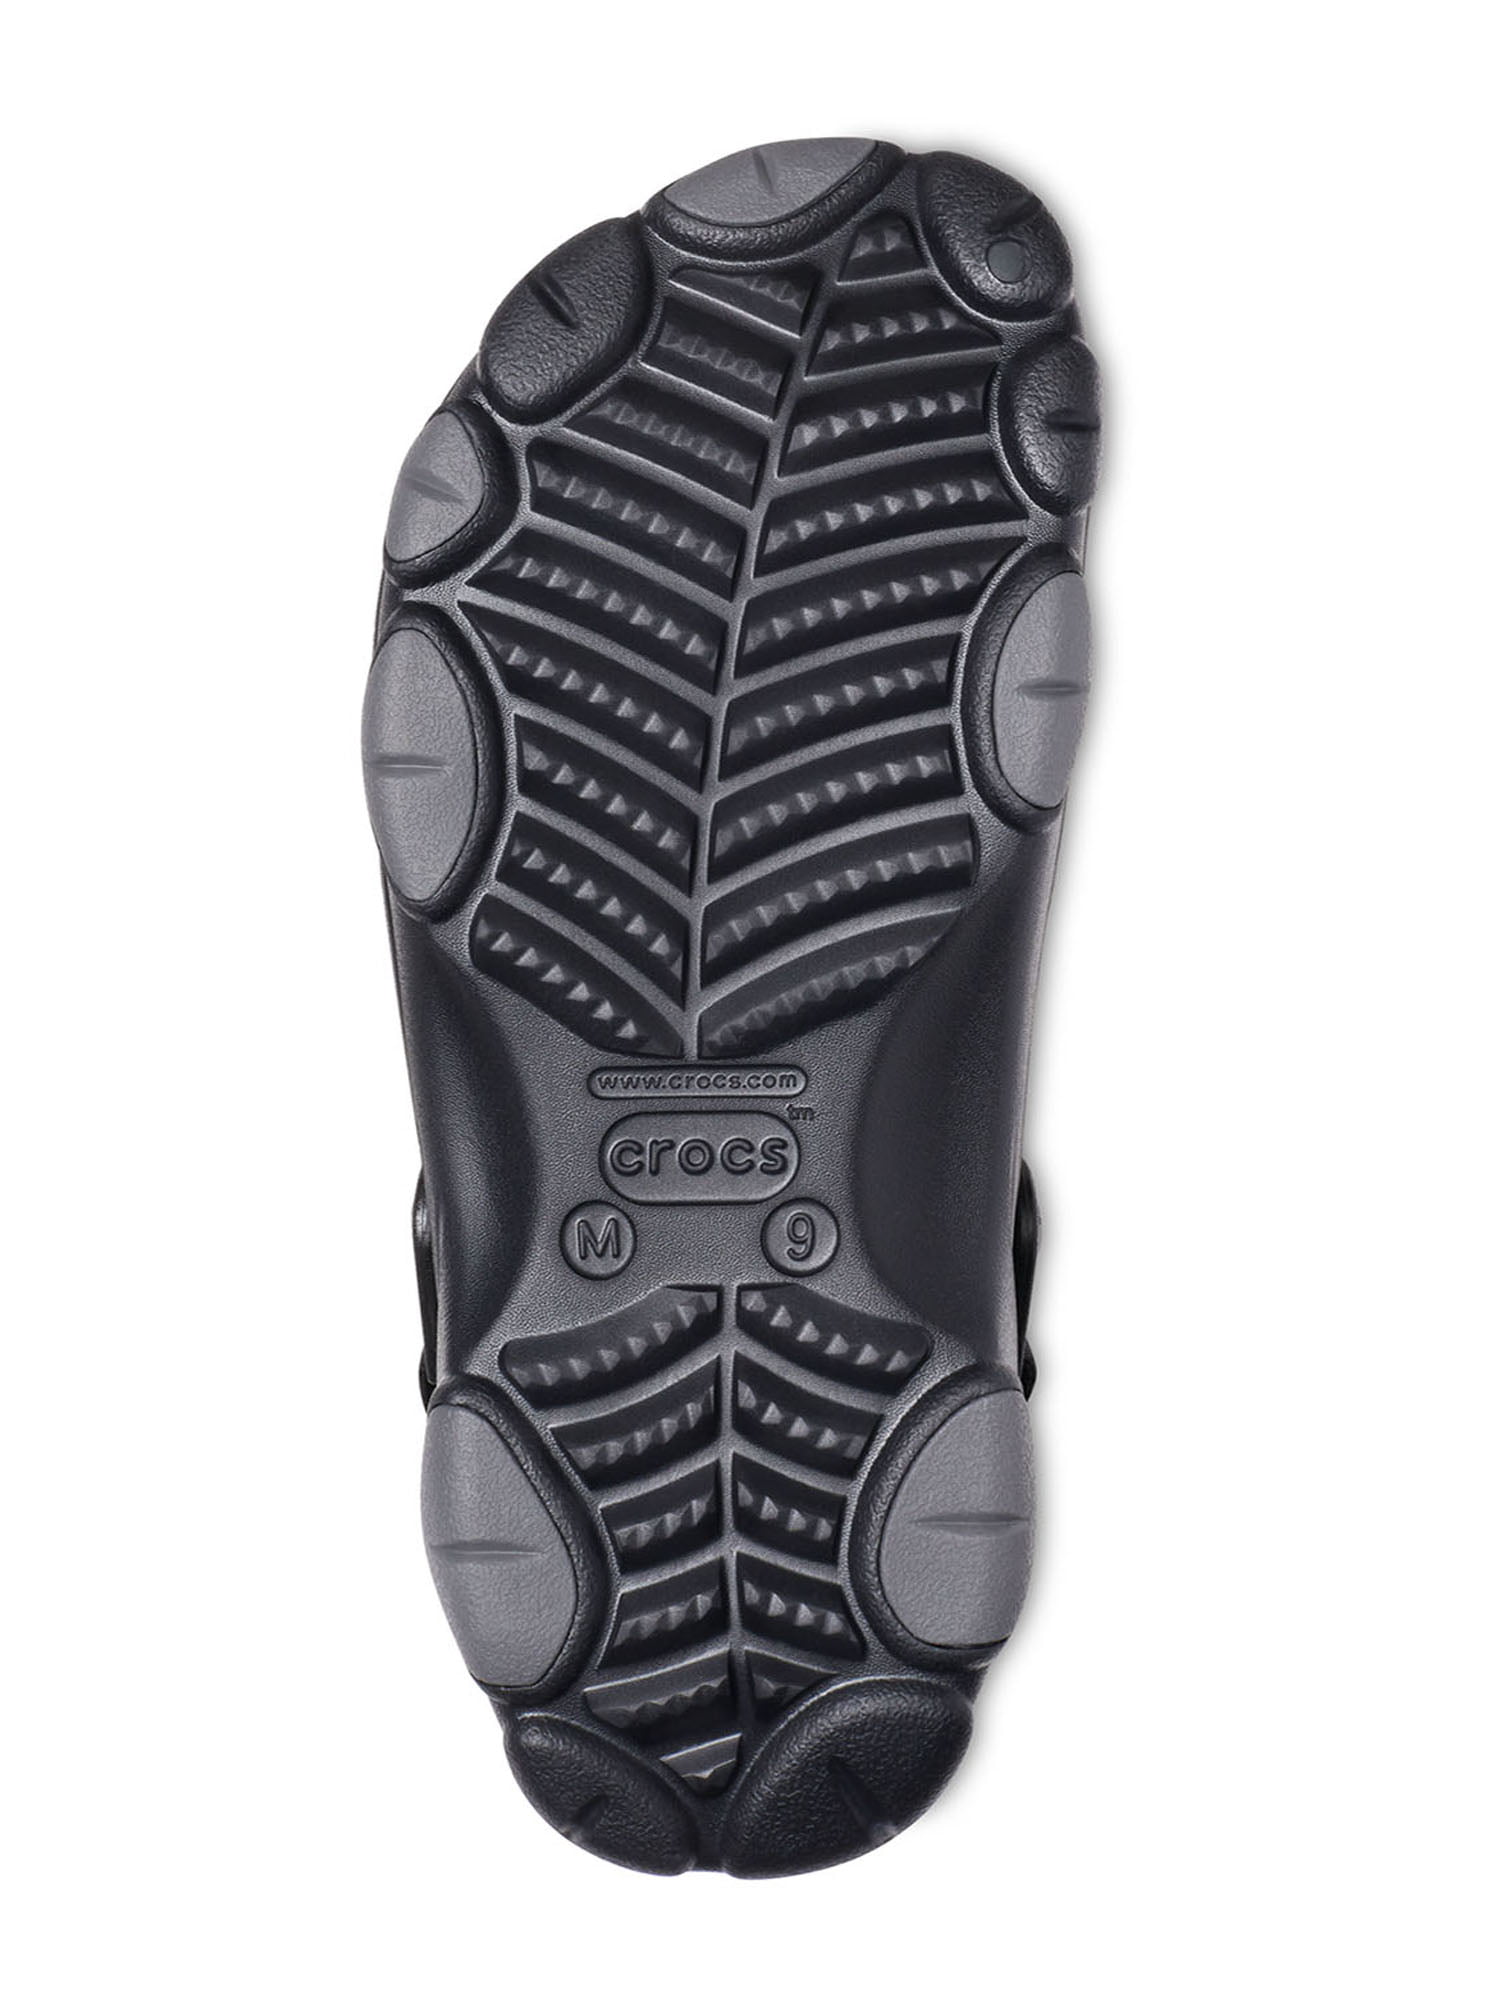 Crocs Unisex-Adult Classic Mossy Oak Clogs Clog : : Clothing, Shoes ...